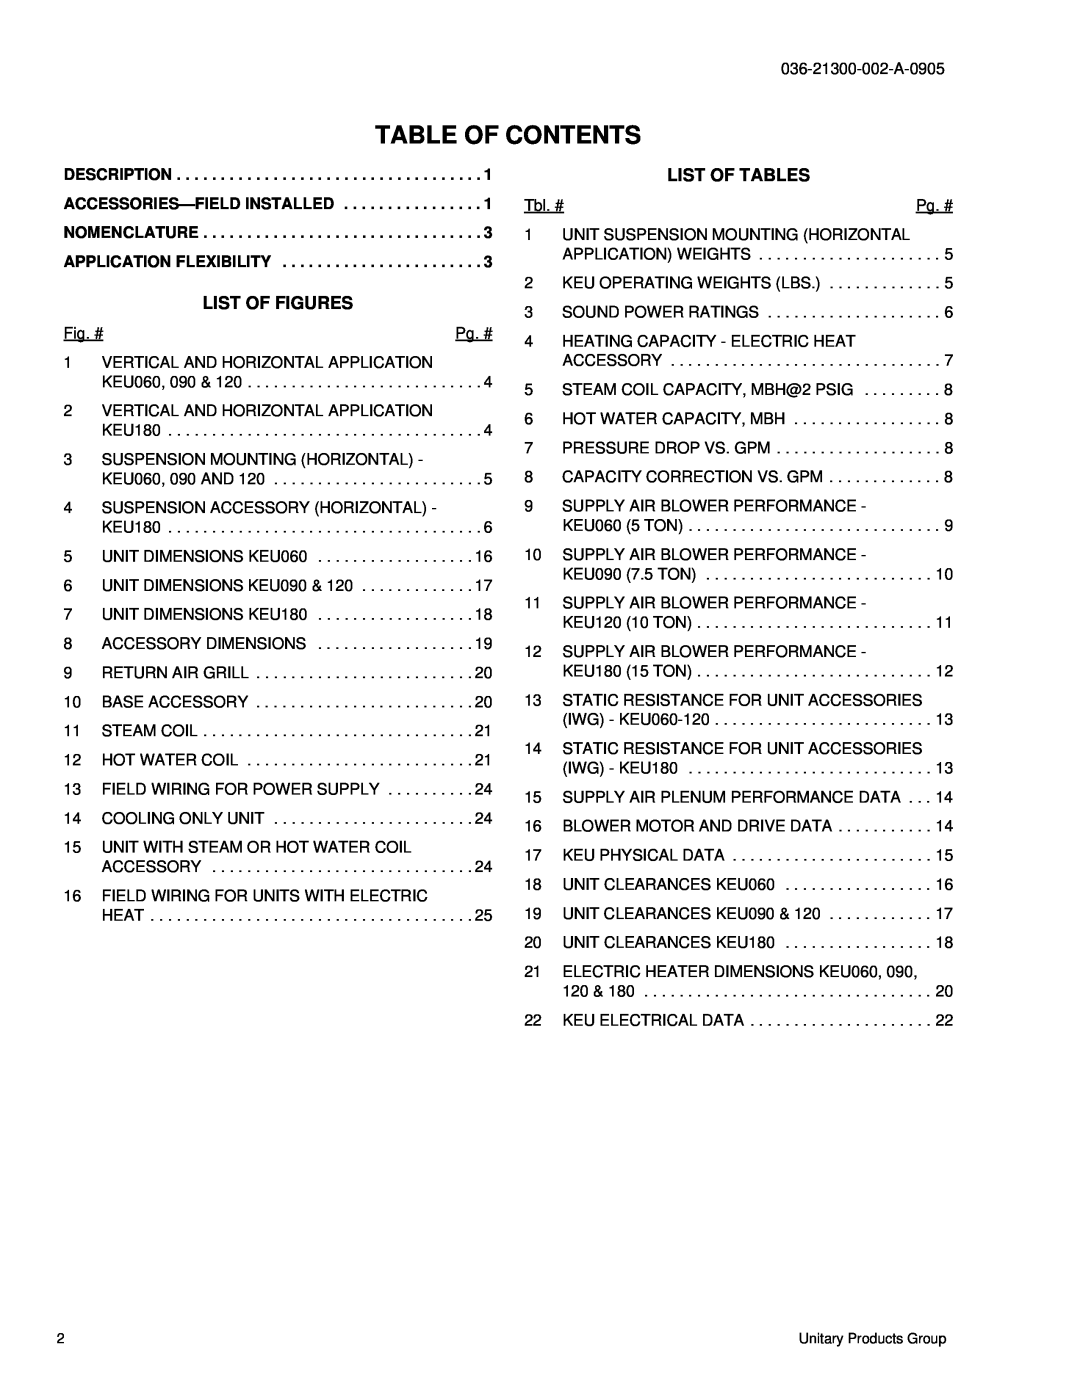 York K4EU090, K2EU060, K3EU120, K3EU180 manual List Of Figures, List Of Tables, Table Of Contents 